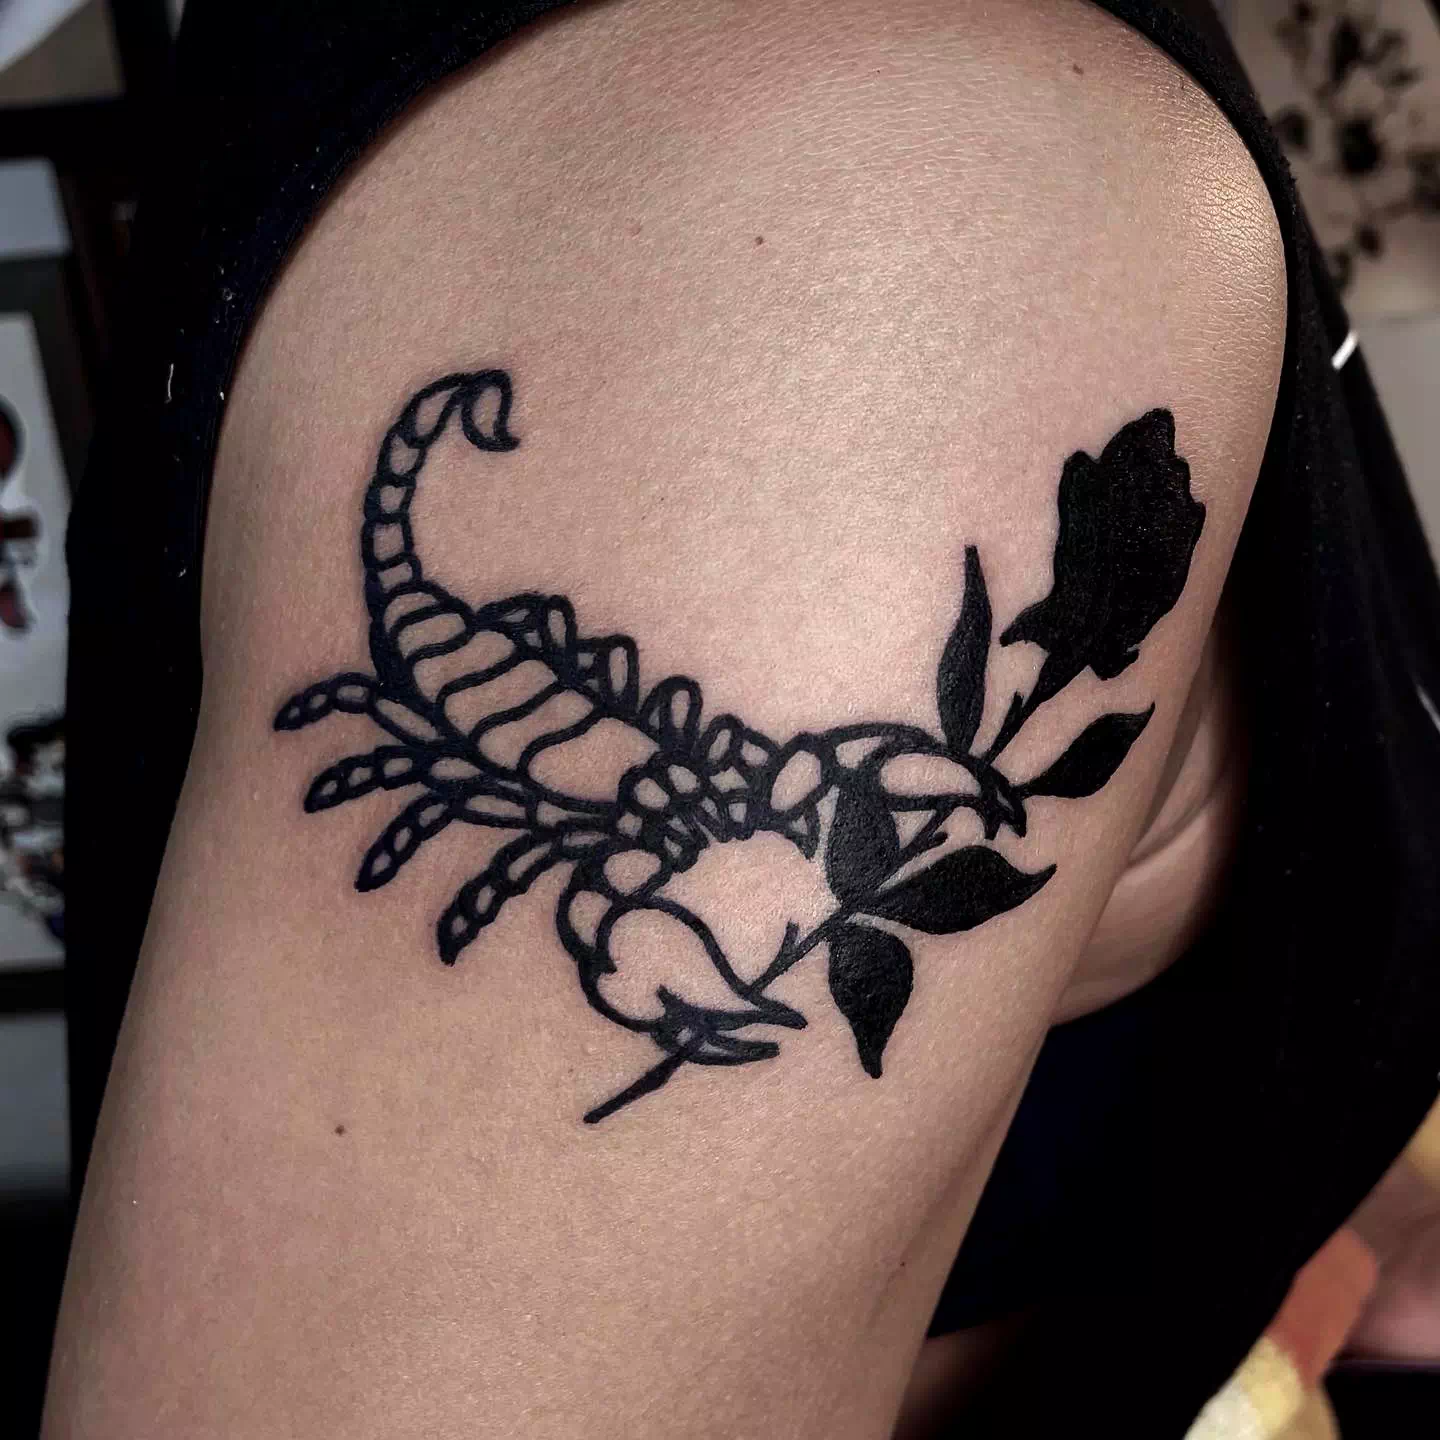 Tatuajes femeninos de Escorpio con un estampado de rosas 4